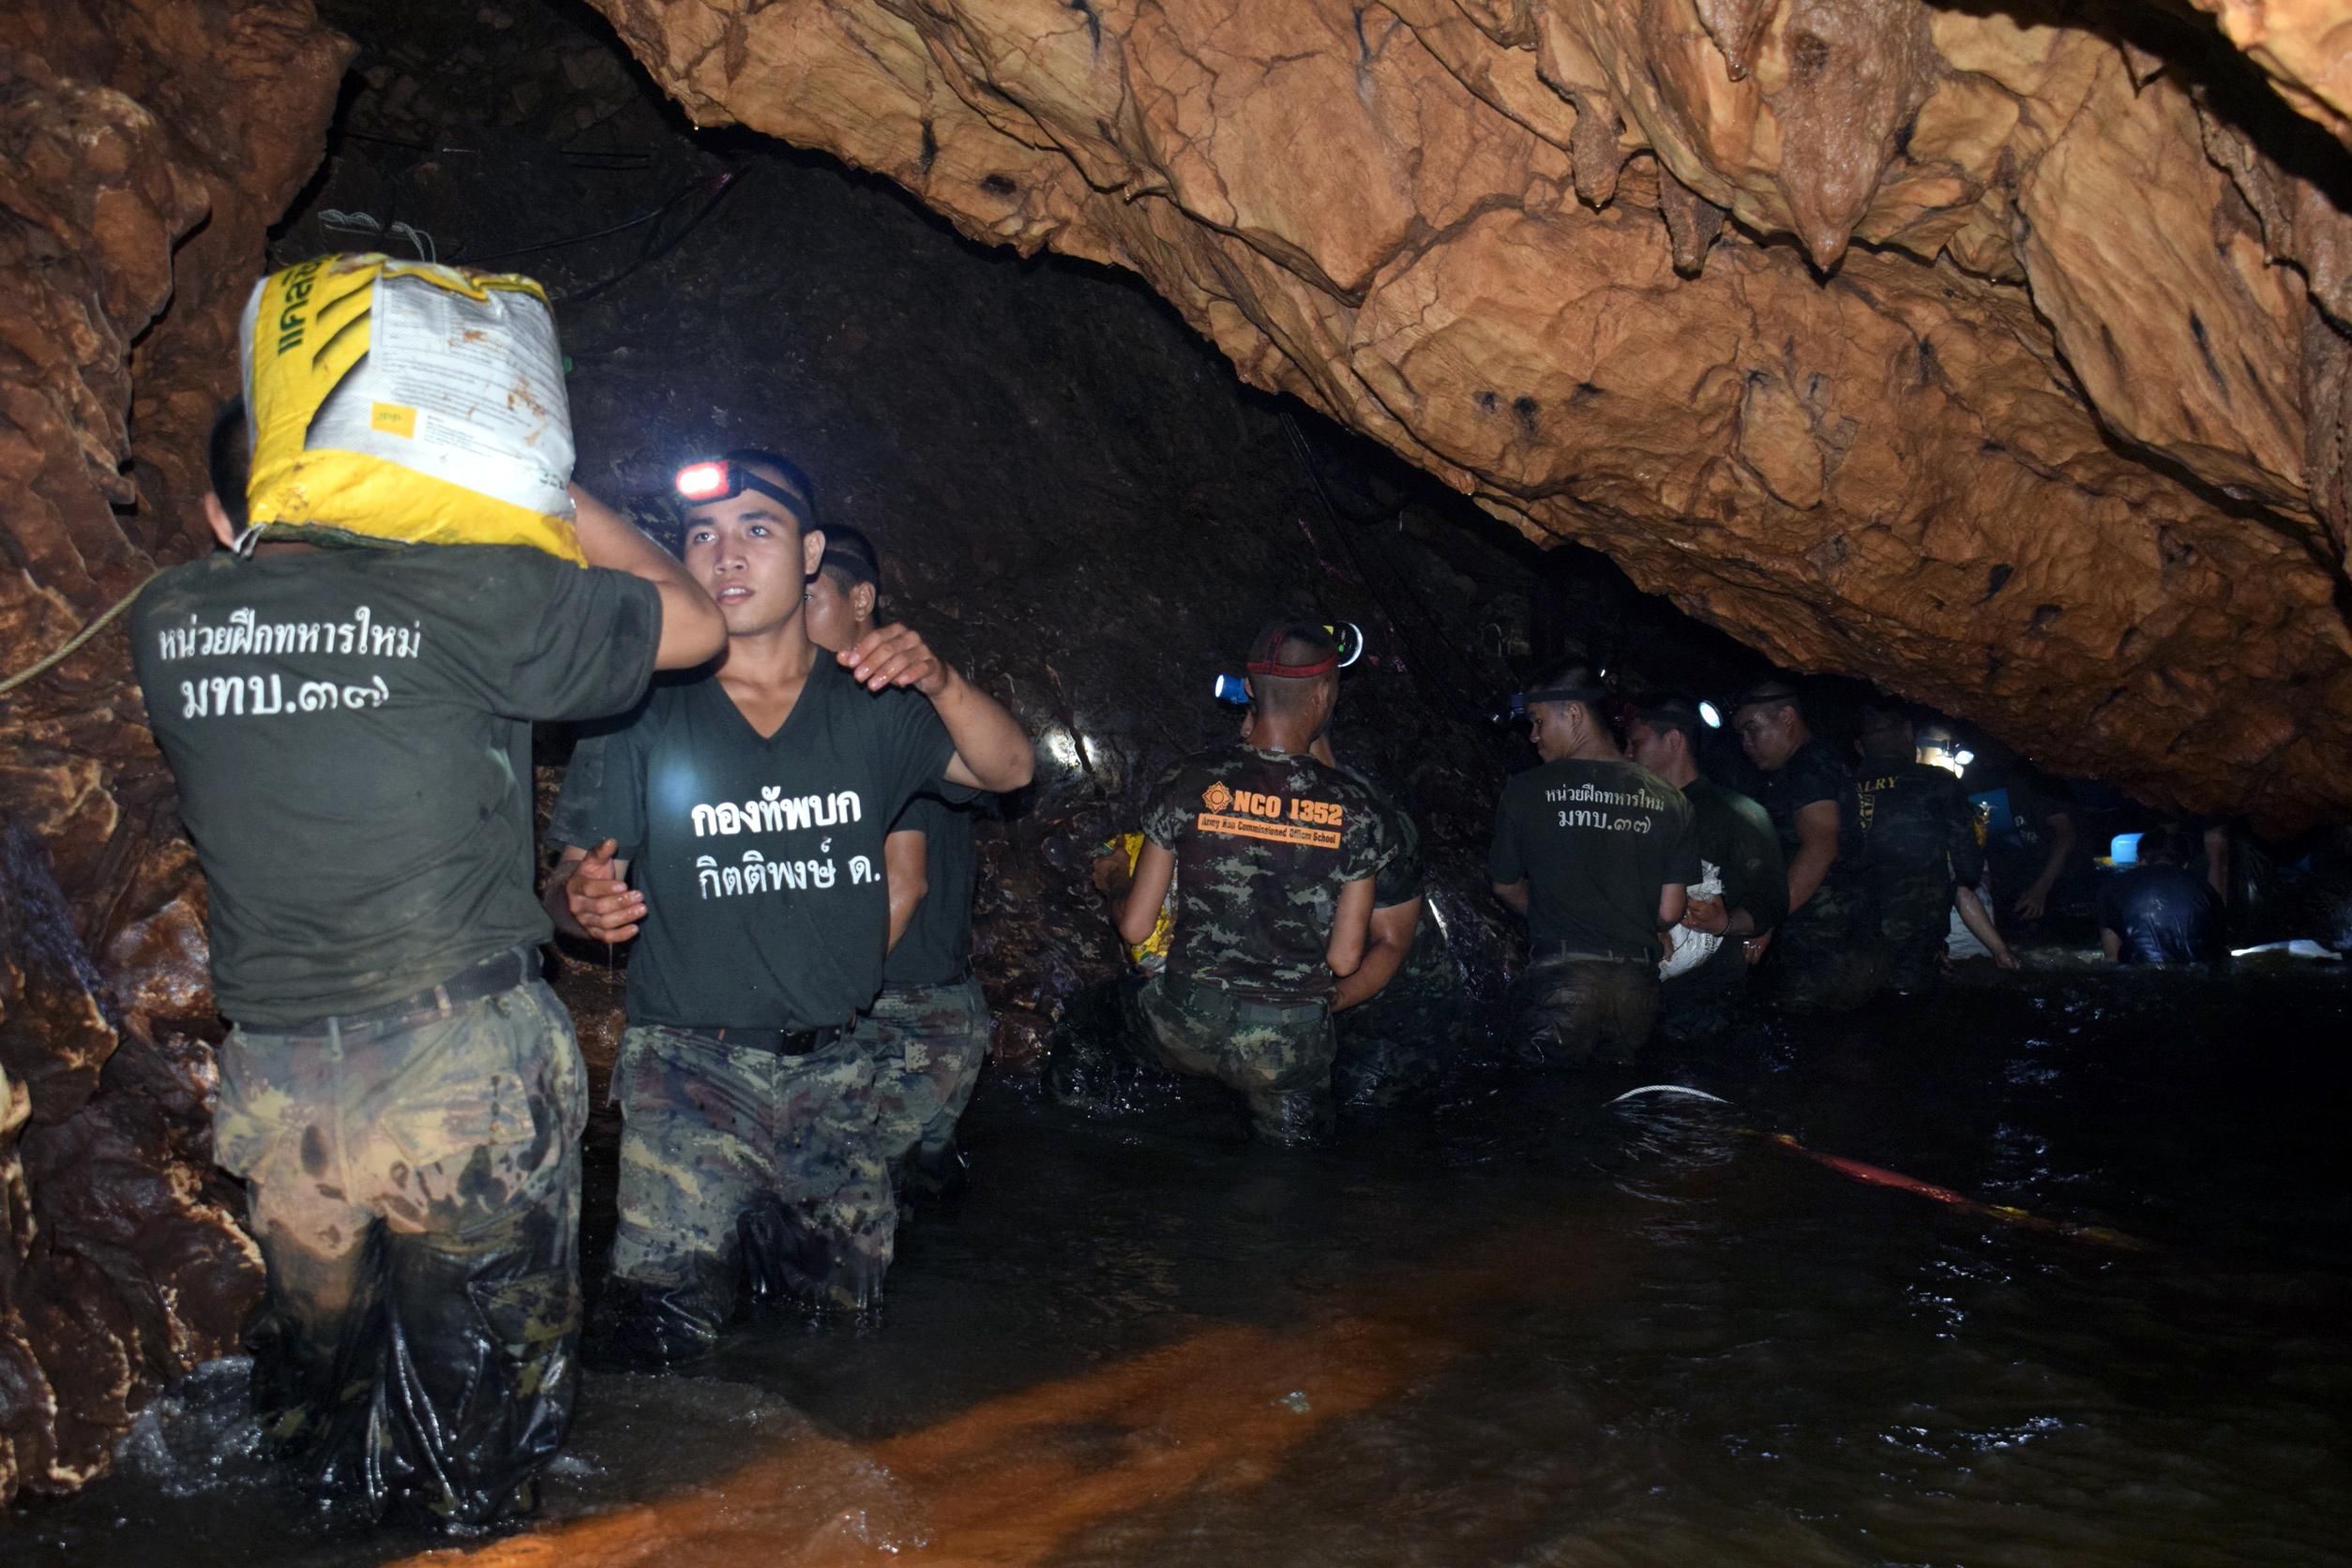 Німеччина запропонувала свої супернасоси для викачки води у печері з дітьми у Таїланді